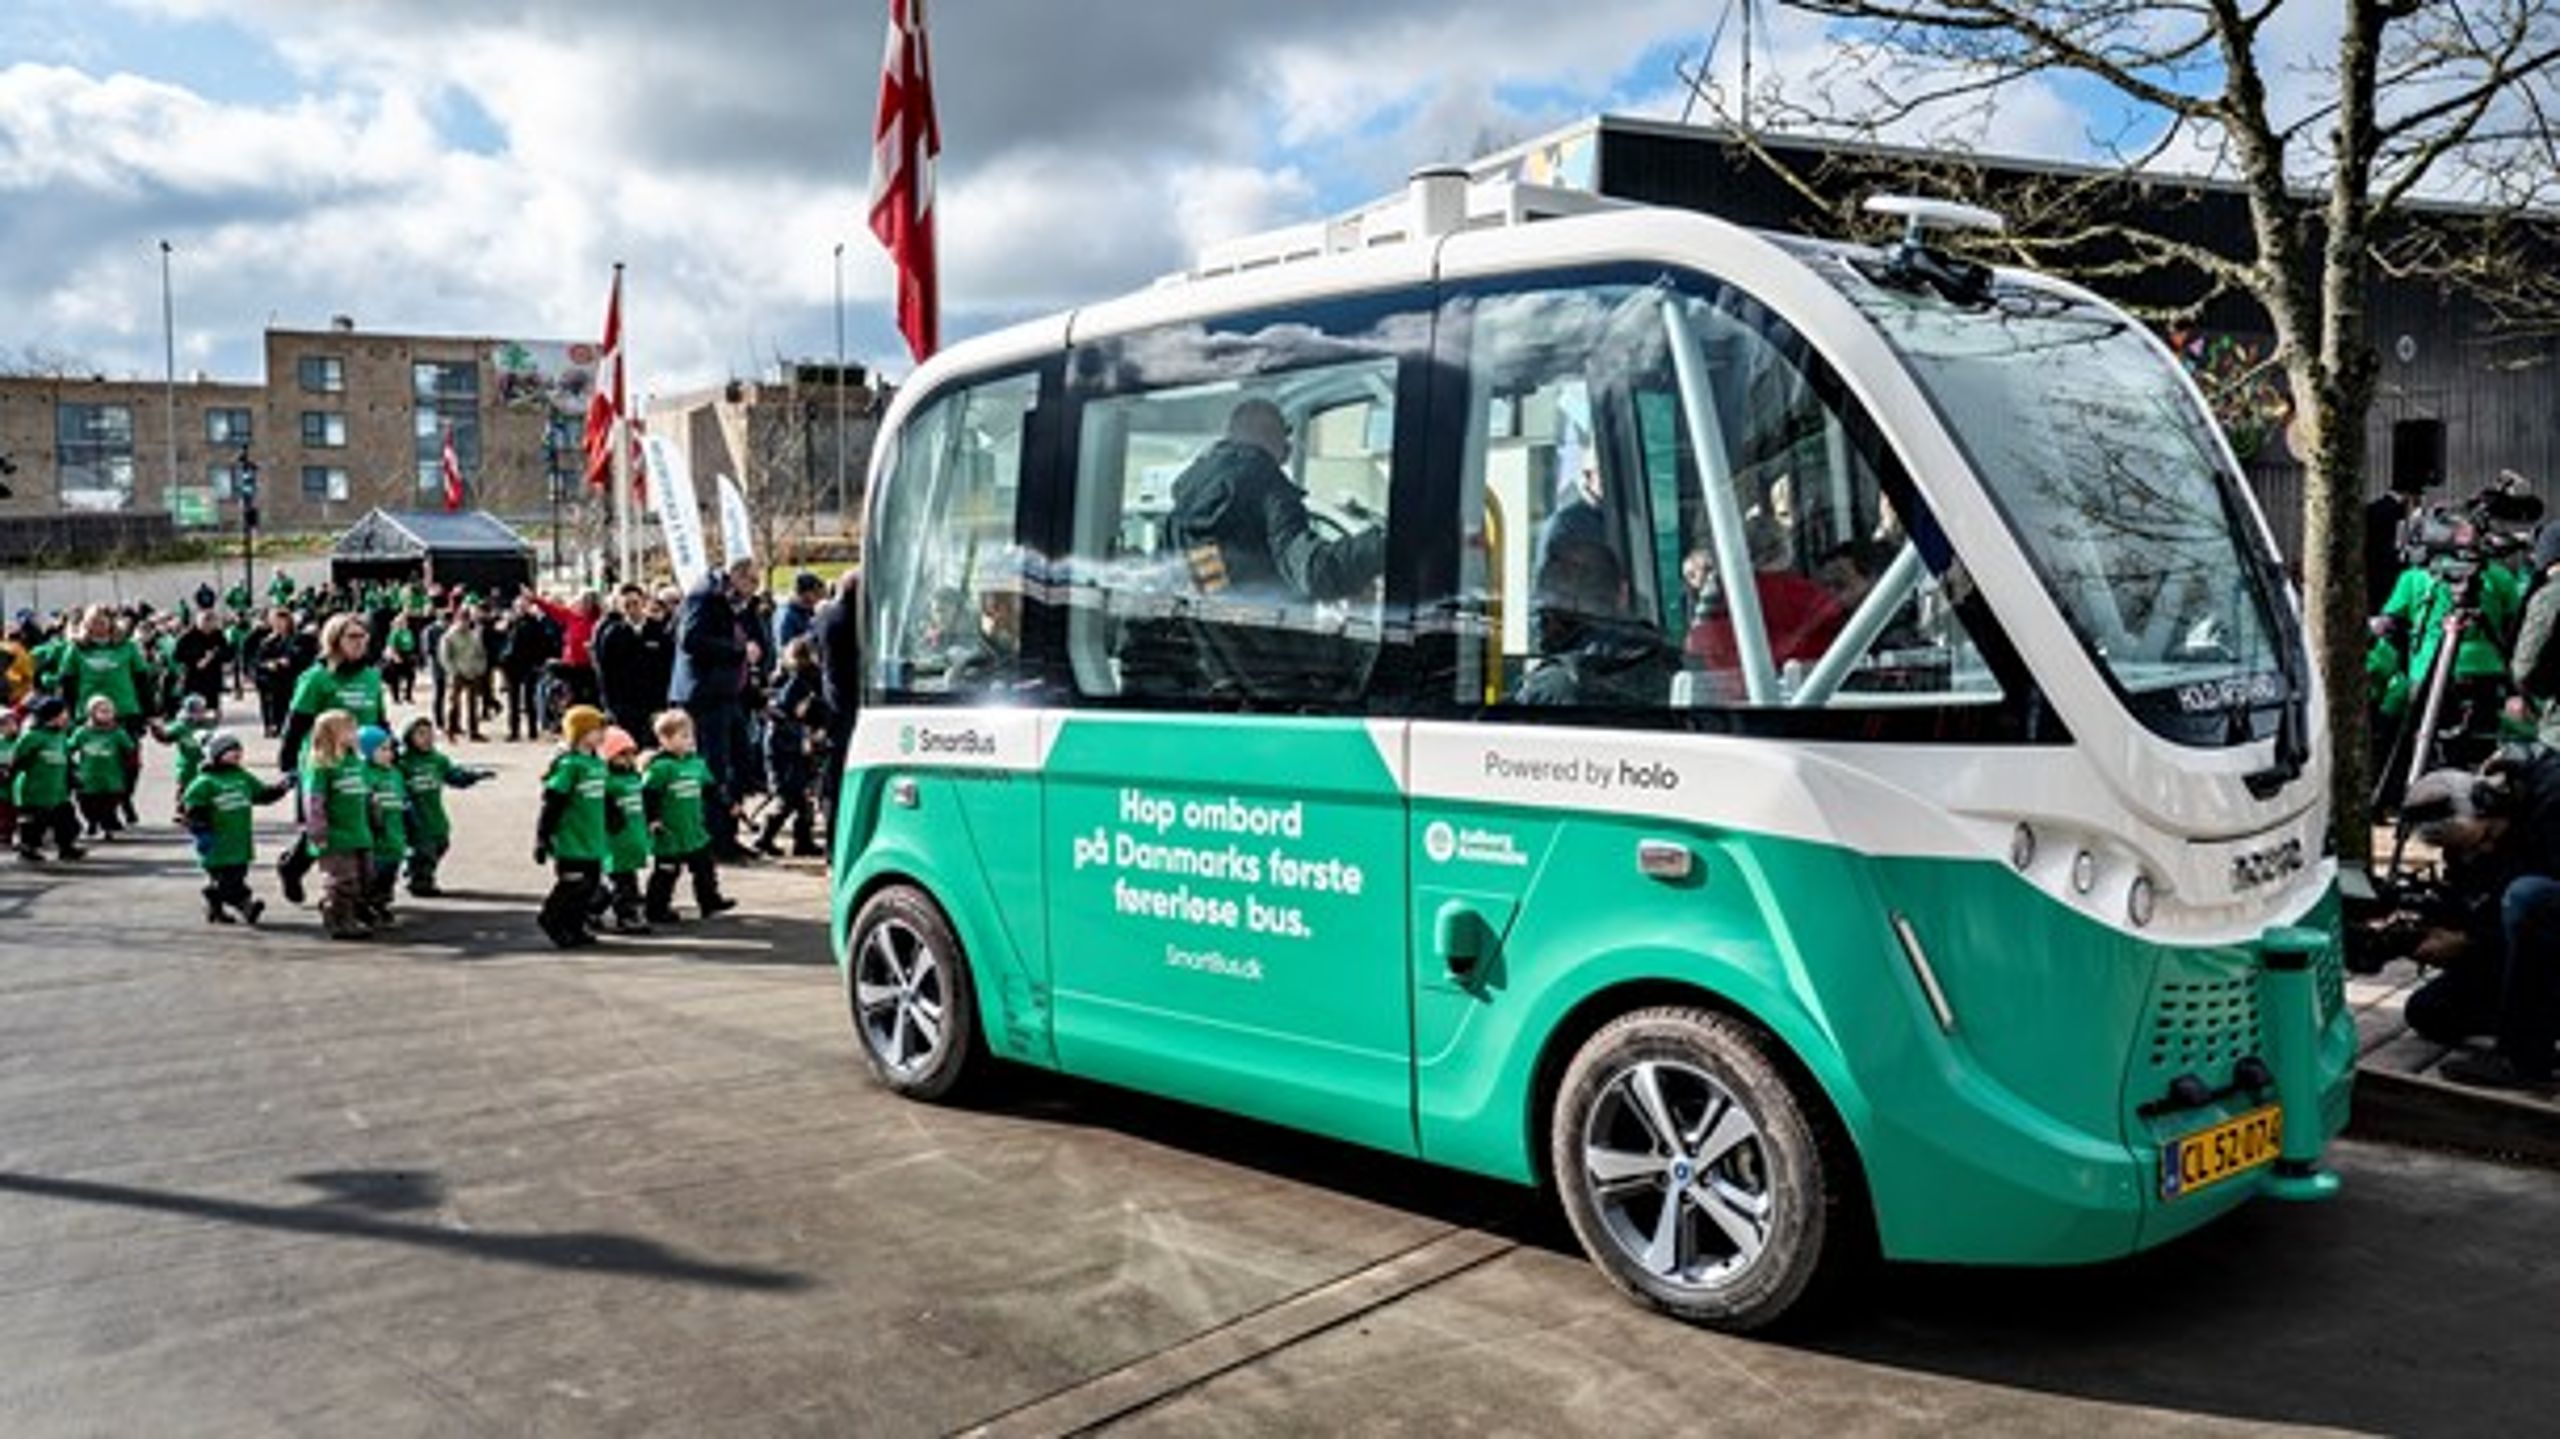 Danmarks første føreløse bus blev indviet i Aalborg den 5. marts.